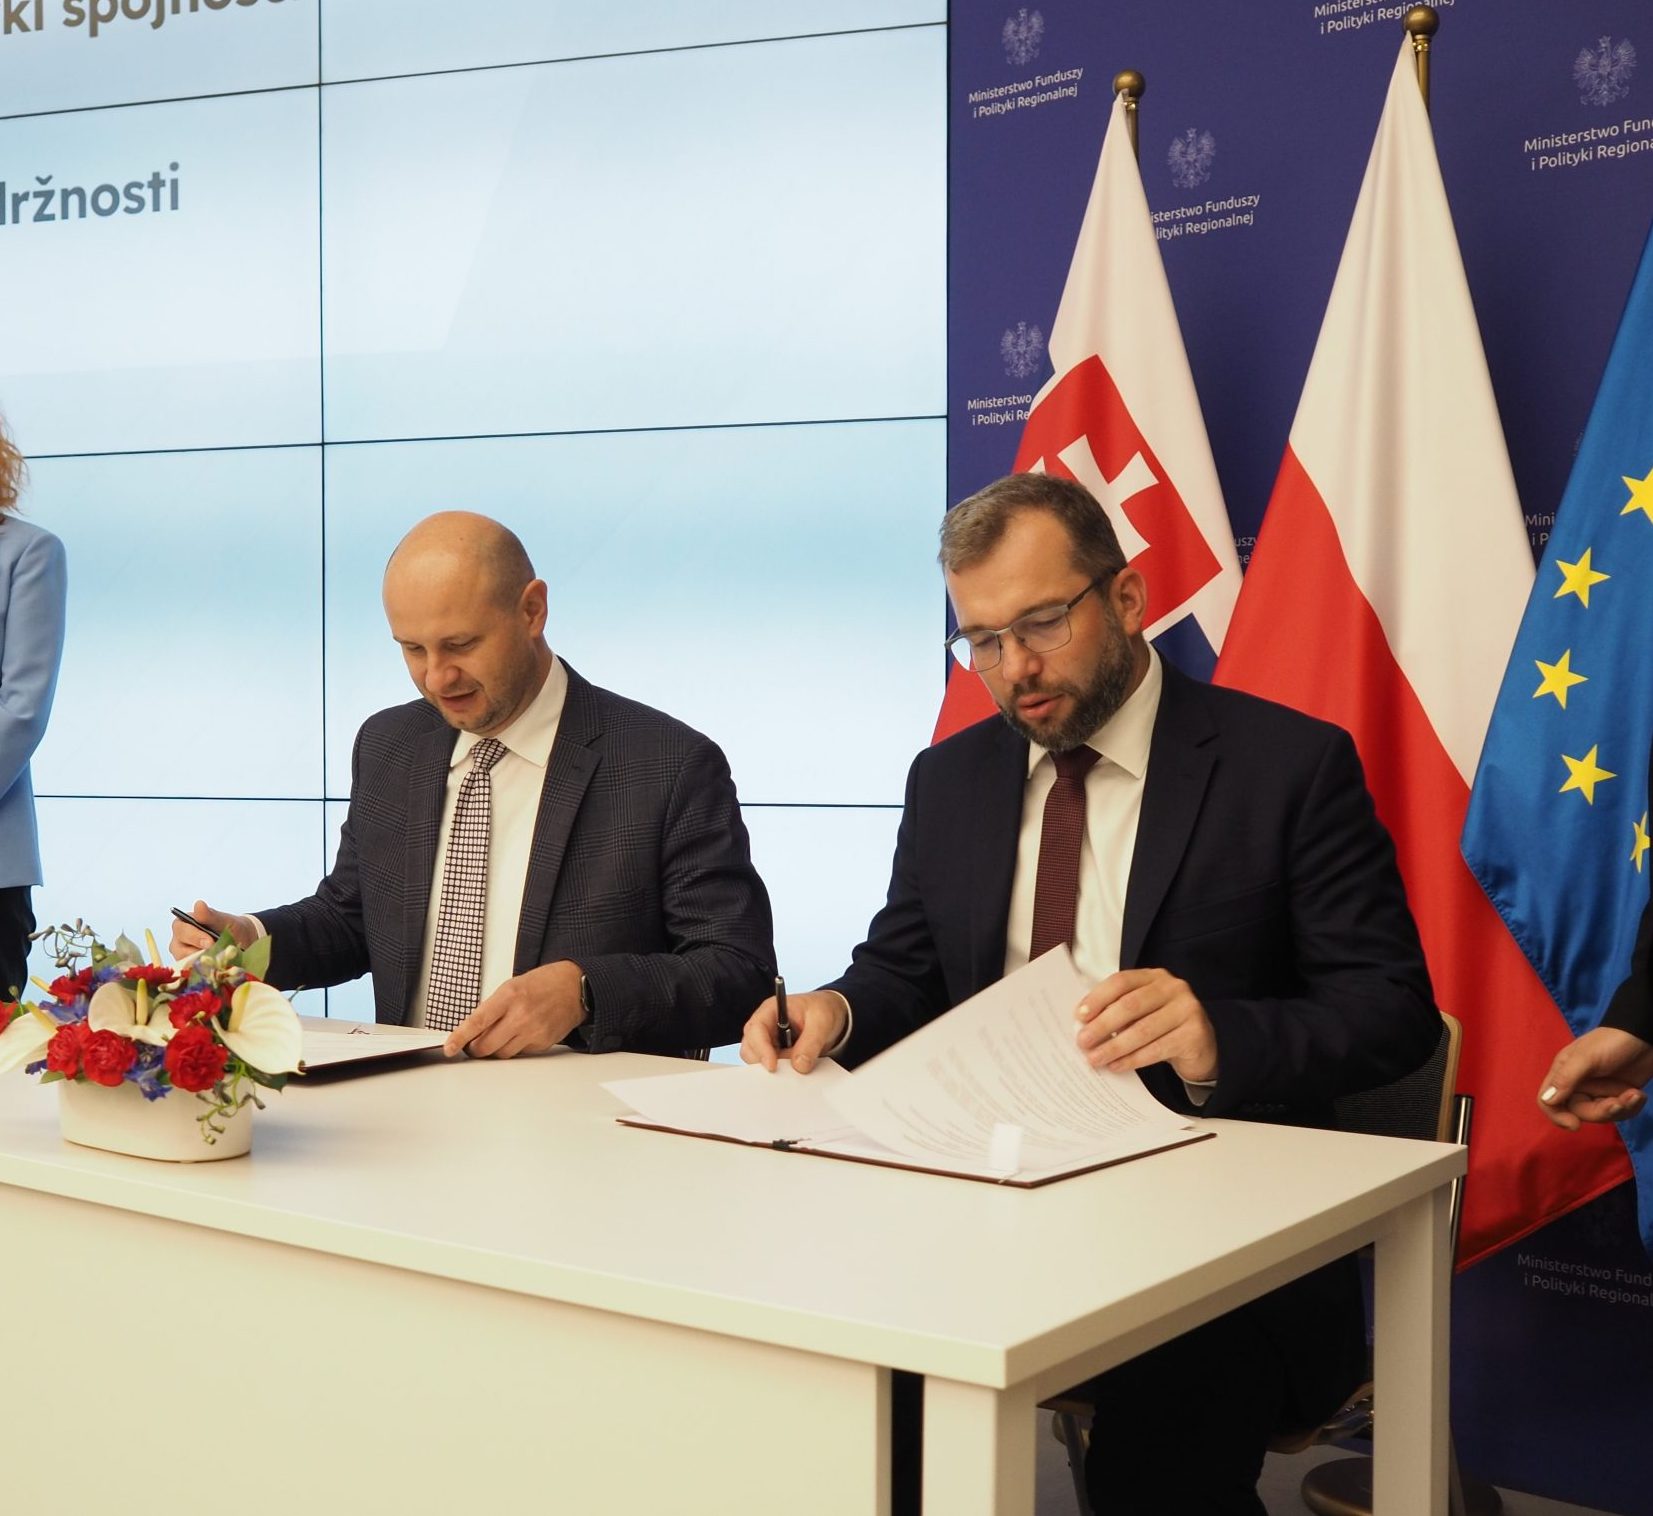 Efektívne čerpanie eurofondov je pre vládu priorita. Vďaka podpisu memoranda bude Slovensko bližšie spolupracovať s Poľskom, jednou z najúspešnejších krajín v EÚ